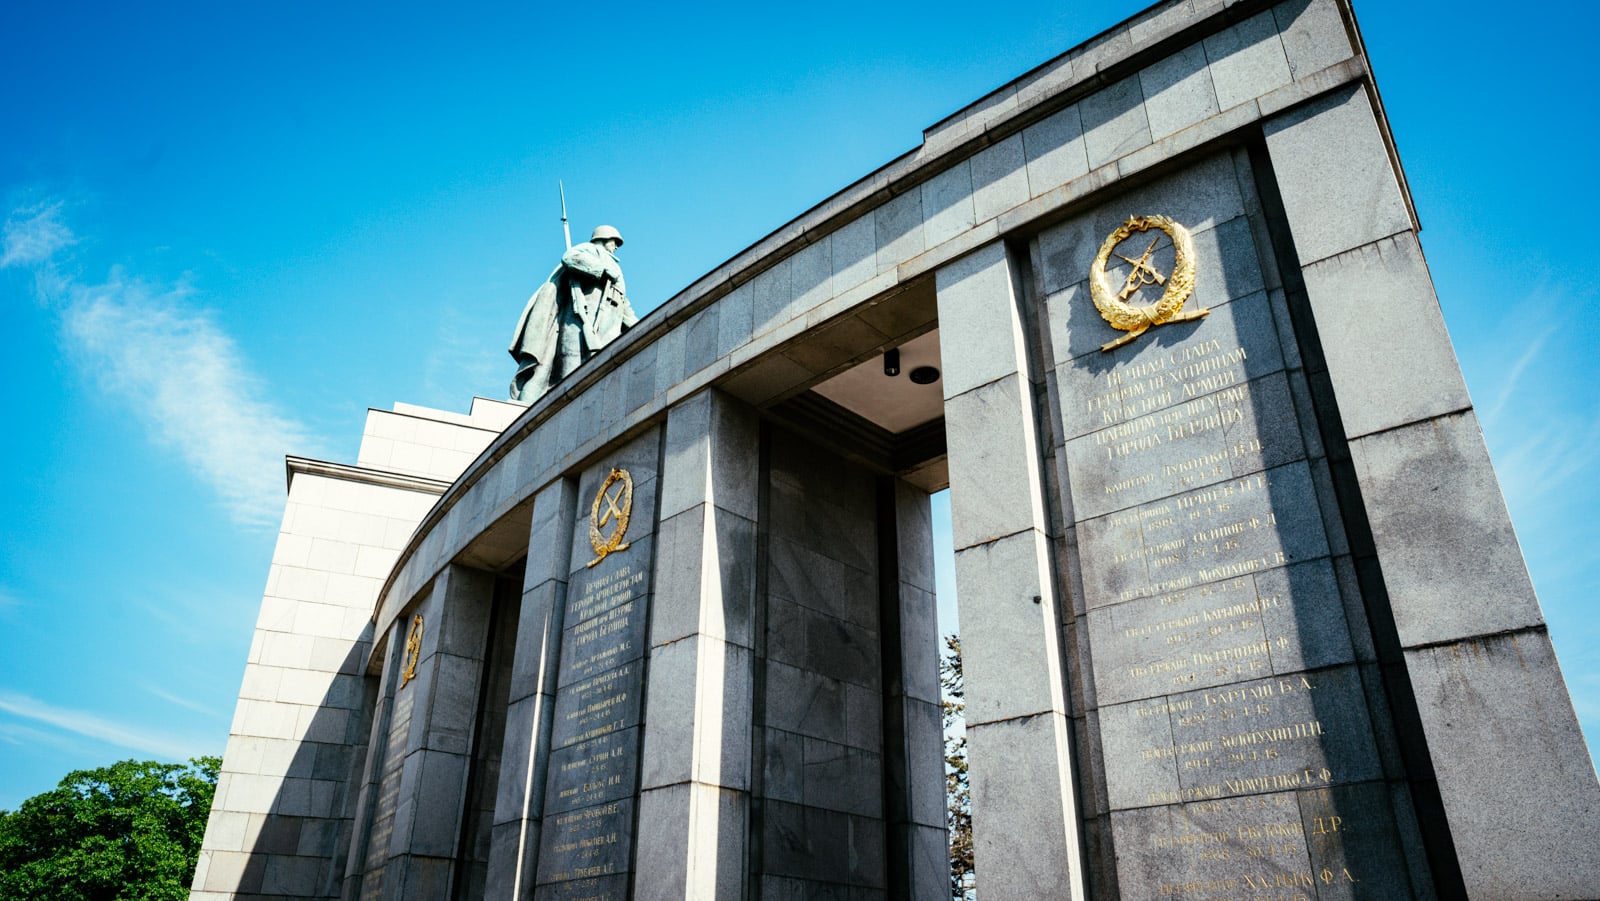 The Soviet War Memorial in the Tiergarten